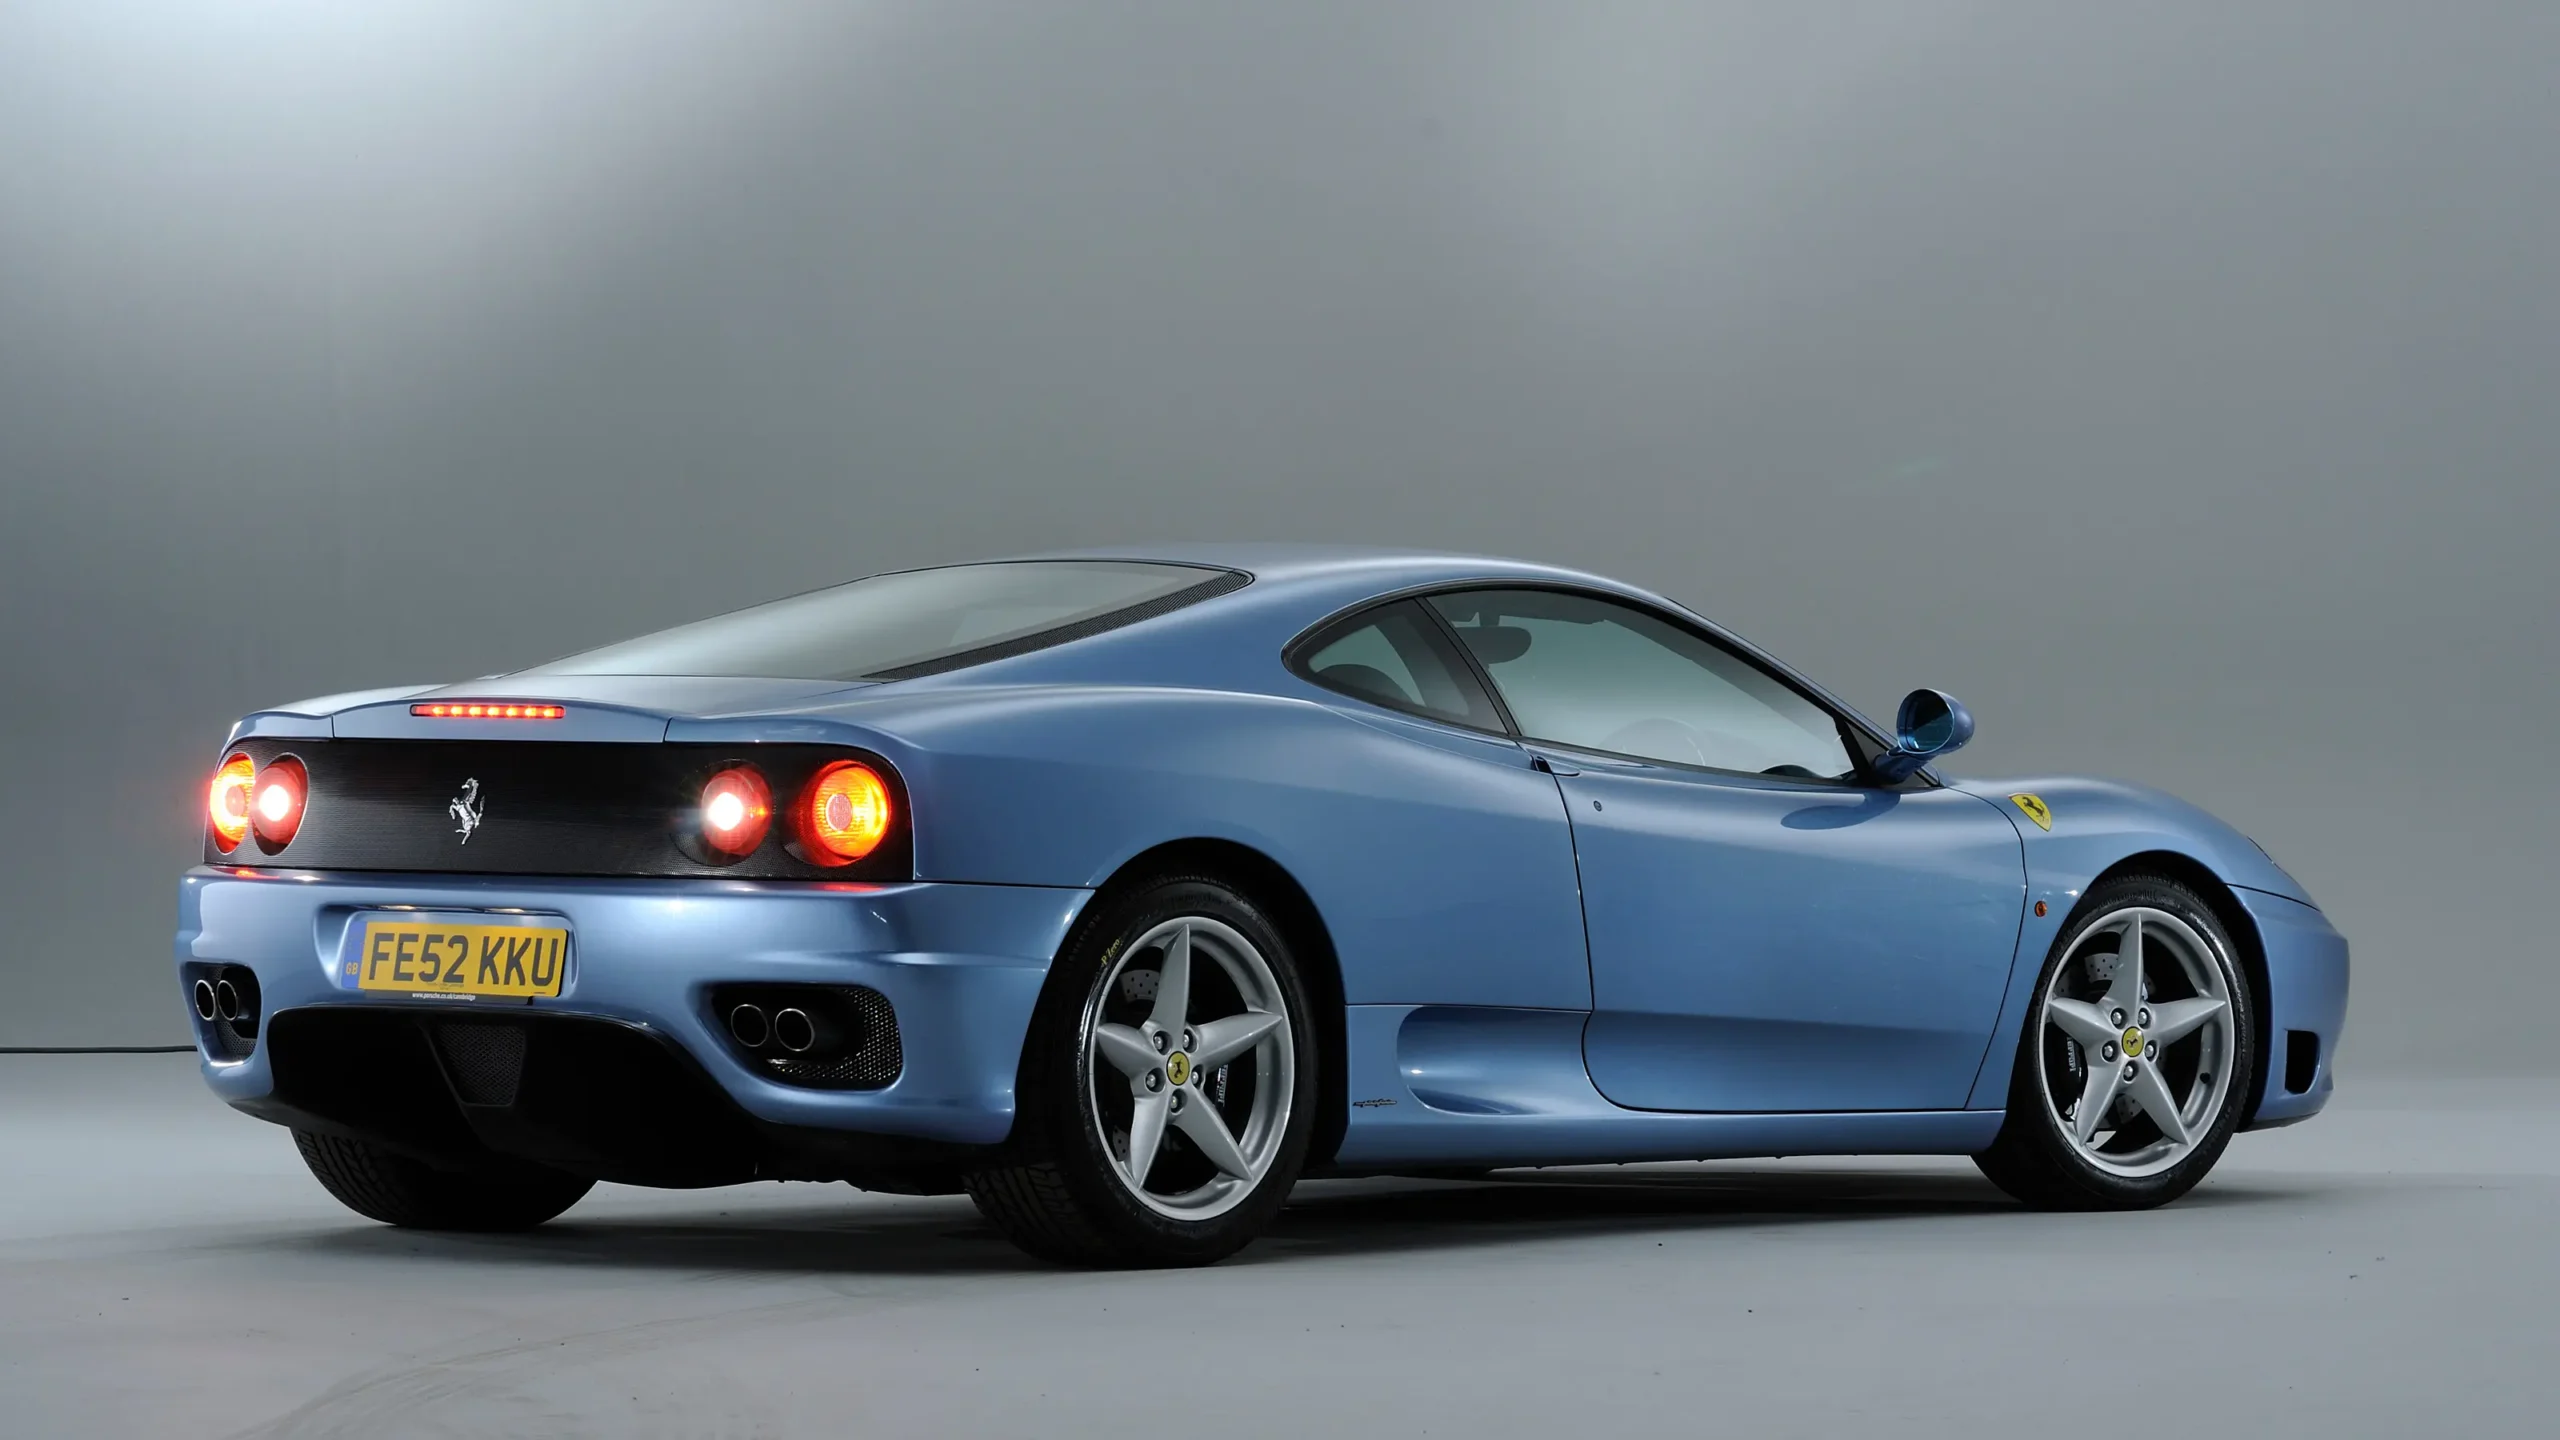 ferrari 360 specs - What is the Ferrari 360 Spider F1 specs